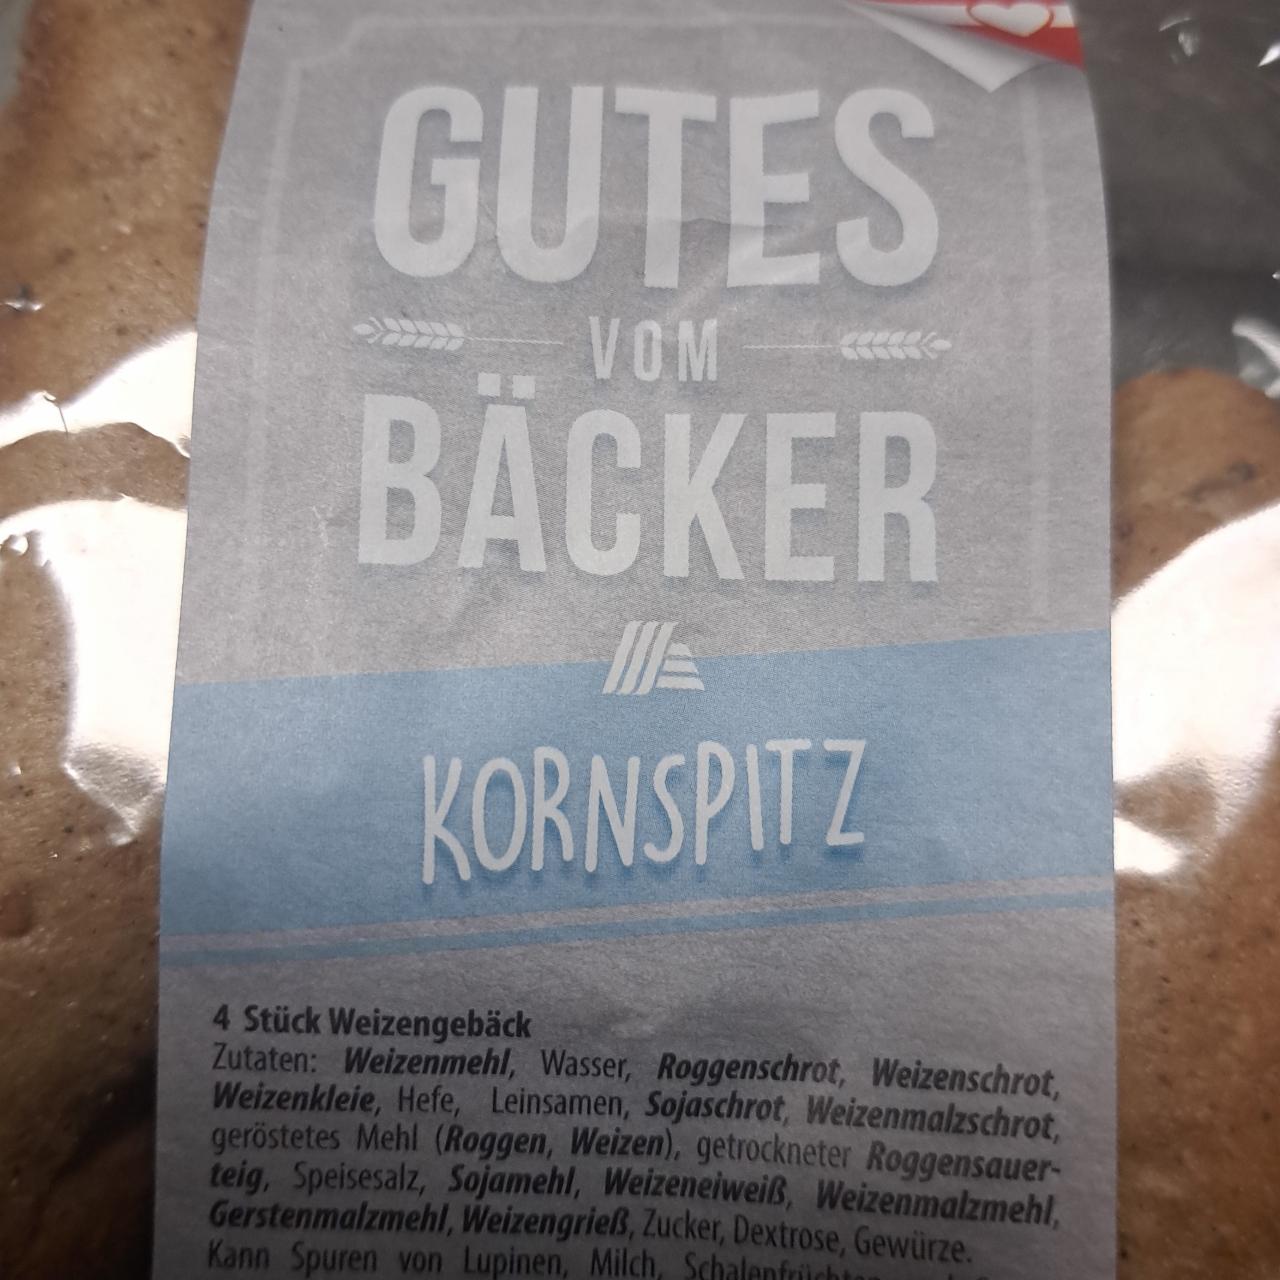 Fotografie - Kornspitz Gutes von Bäcker